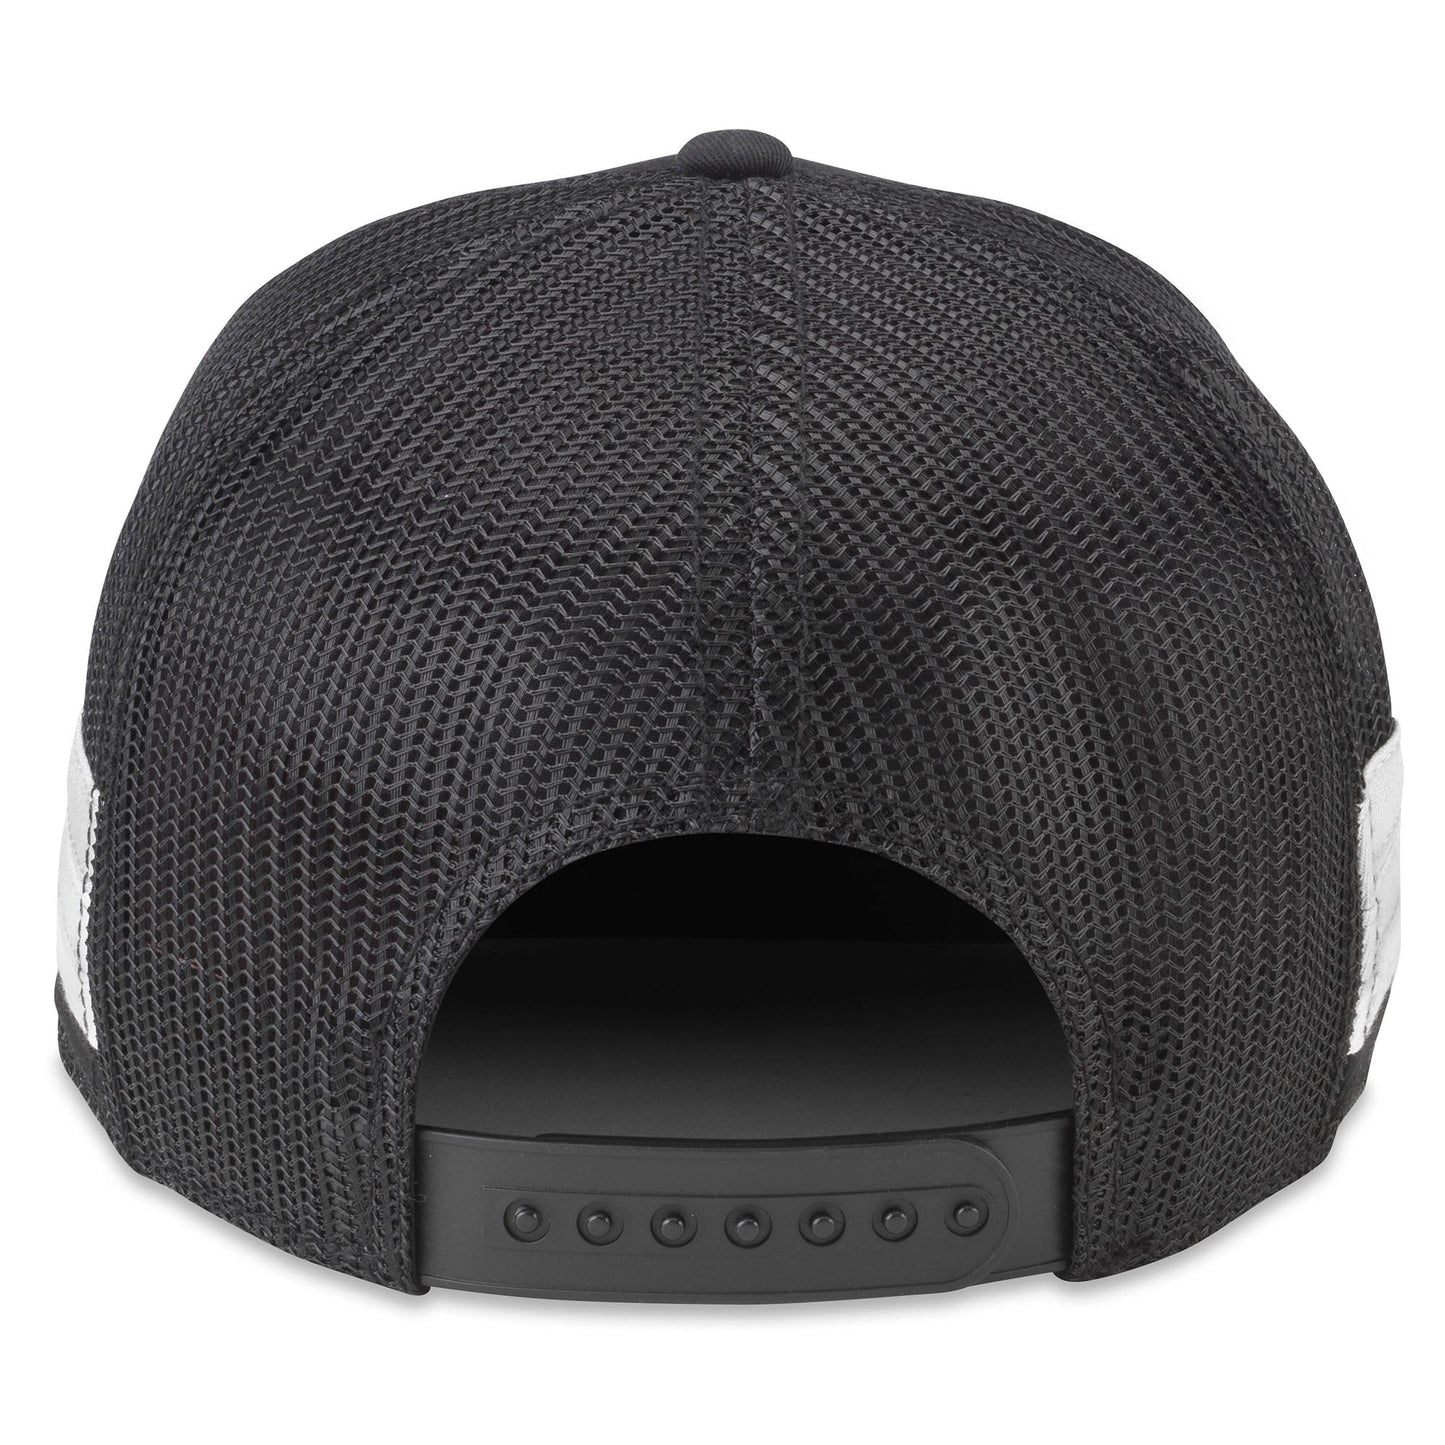 AMERICAN NEEDLE Los Angeles LA Kings NHL Hotfoot Adjustable Snapback Baseball Hat, Black (23018A-LAK-BLK)